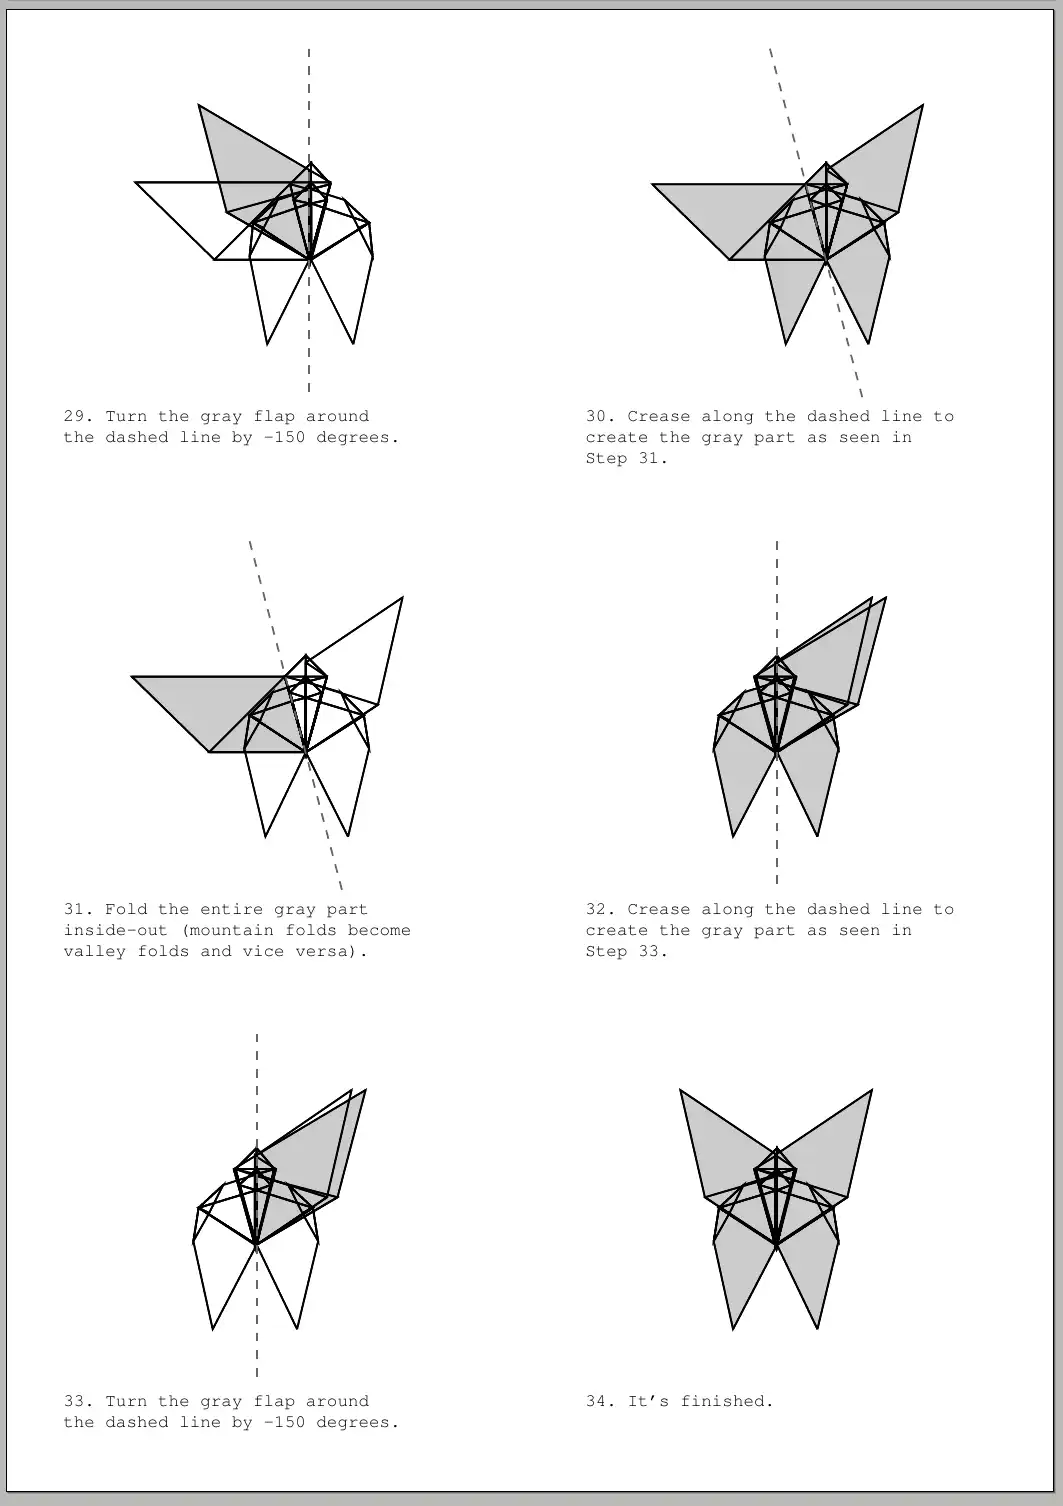 ലിനക്സ് ഓൺലൈനിൽ വിൻഡോസിൽ പ്രവർത്തിപ്പിക്കുന്നതിന് വെബ് ടൂൾ അല്ലെങ്കിൽ വെബ് ആപ്പ് Origami Editor 3D ഡൗൺലോഡ് ചെയ്യുക